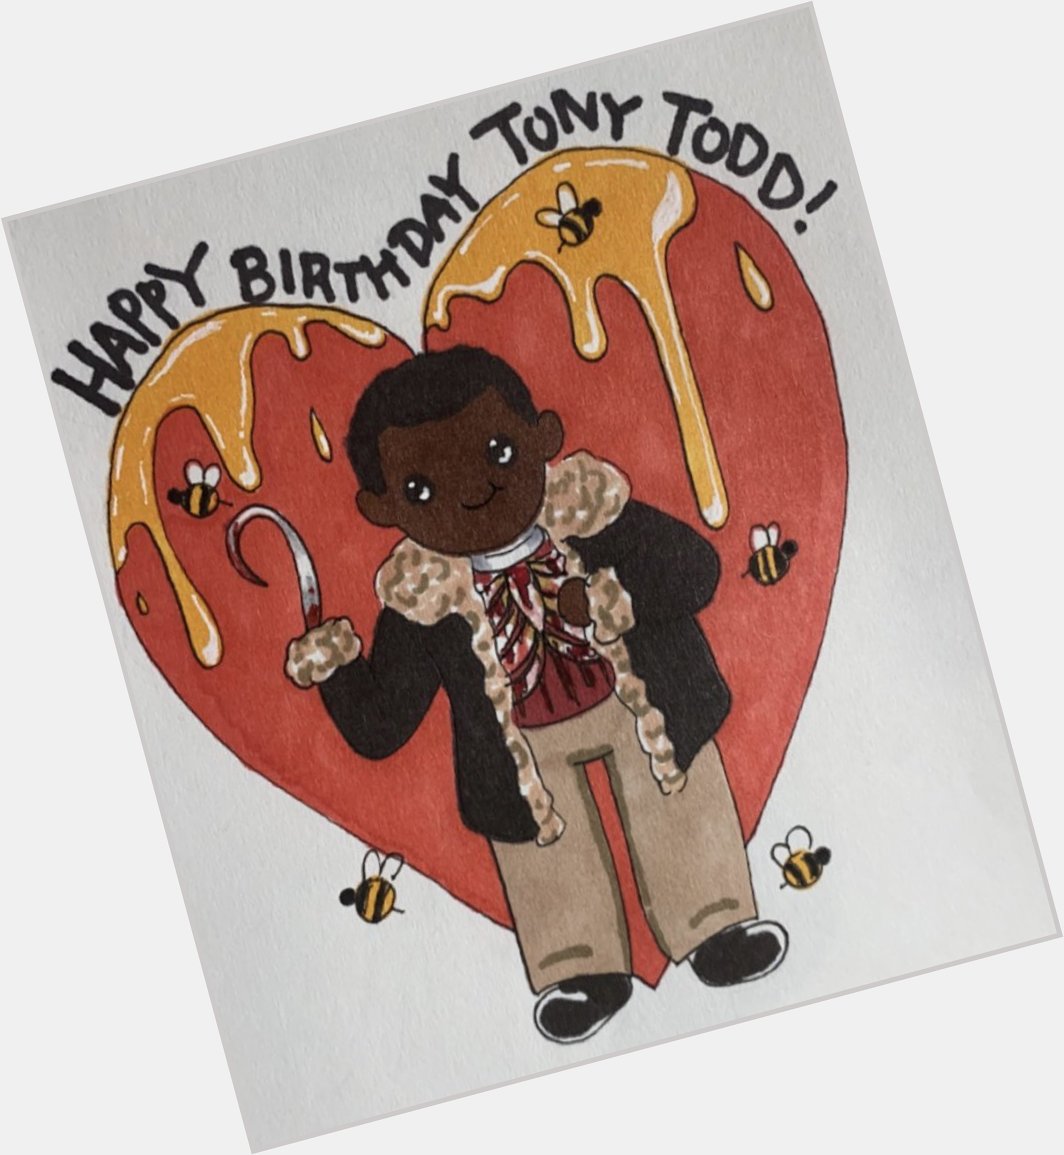 Happy birthday Tony Todd 